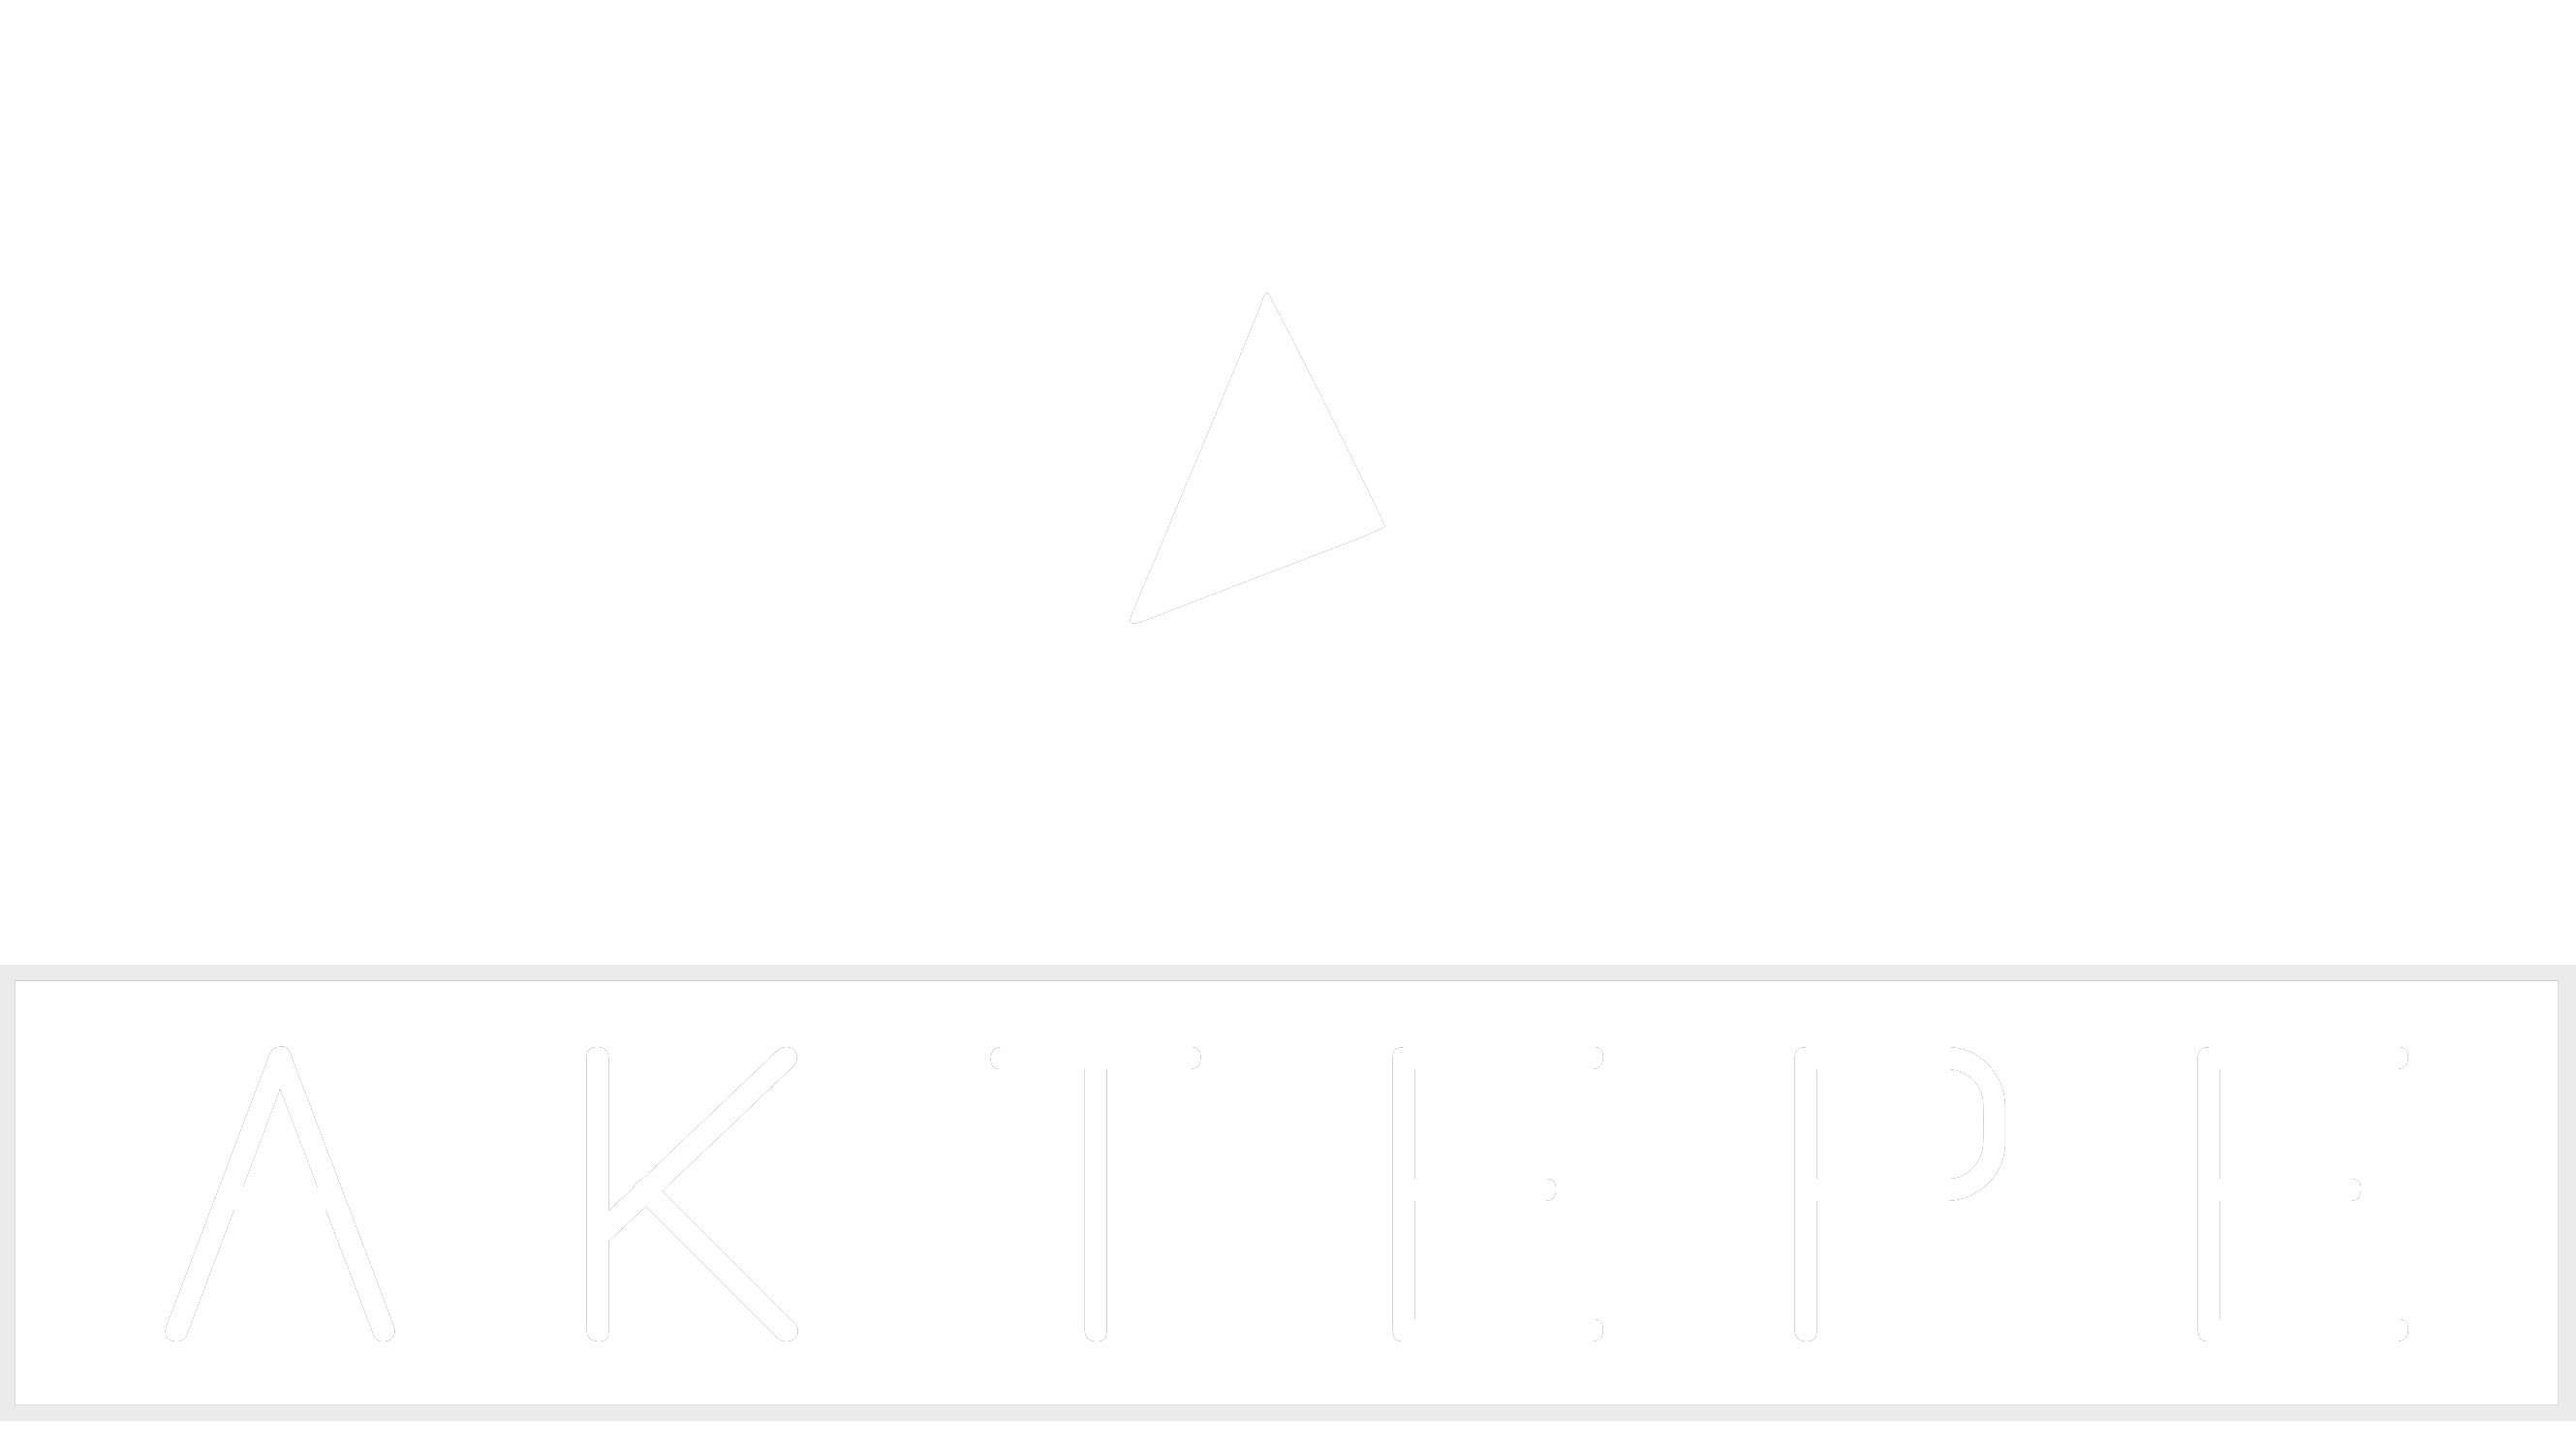 L200 - Aktepe Shop - Oto Müzik Görüntü Navigasyon Sistemleri ve Teyp Çerçevesi Satış Merkezi